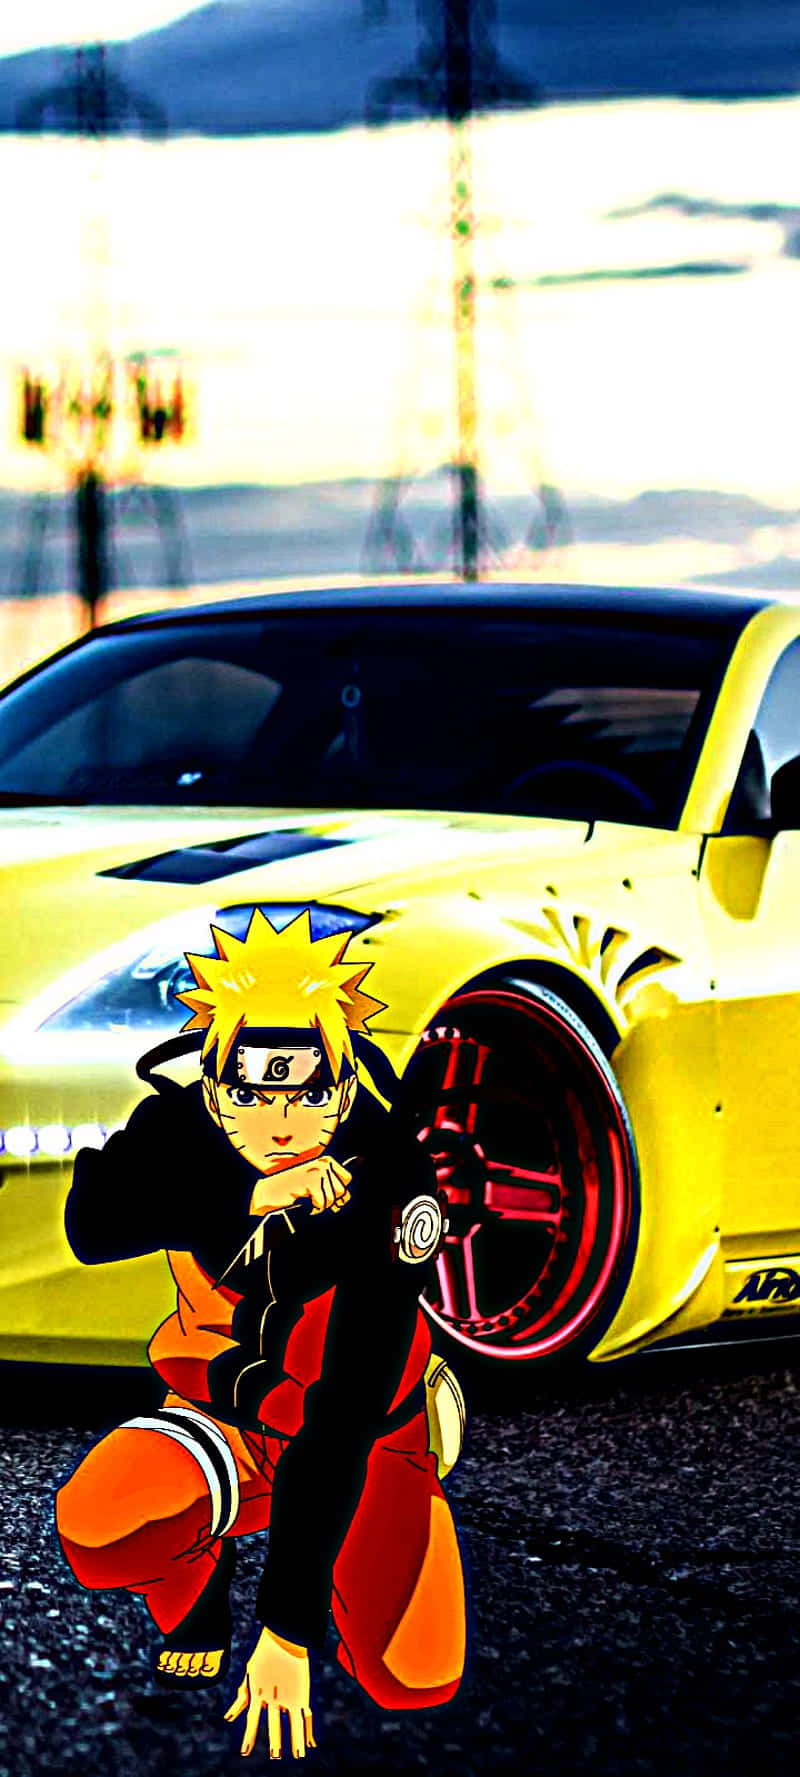 En gul bil med en Naruto-karakter på den. Wallpaper